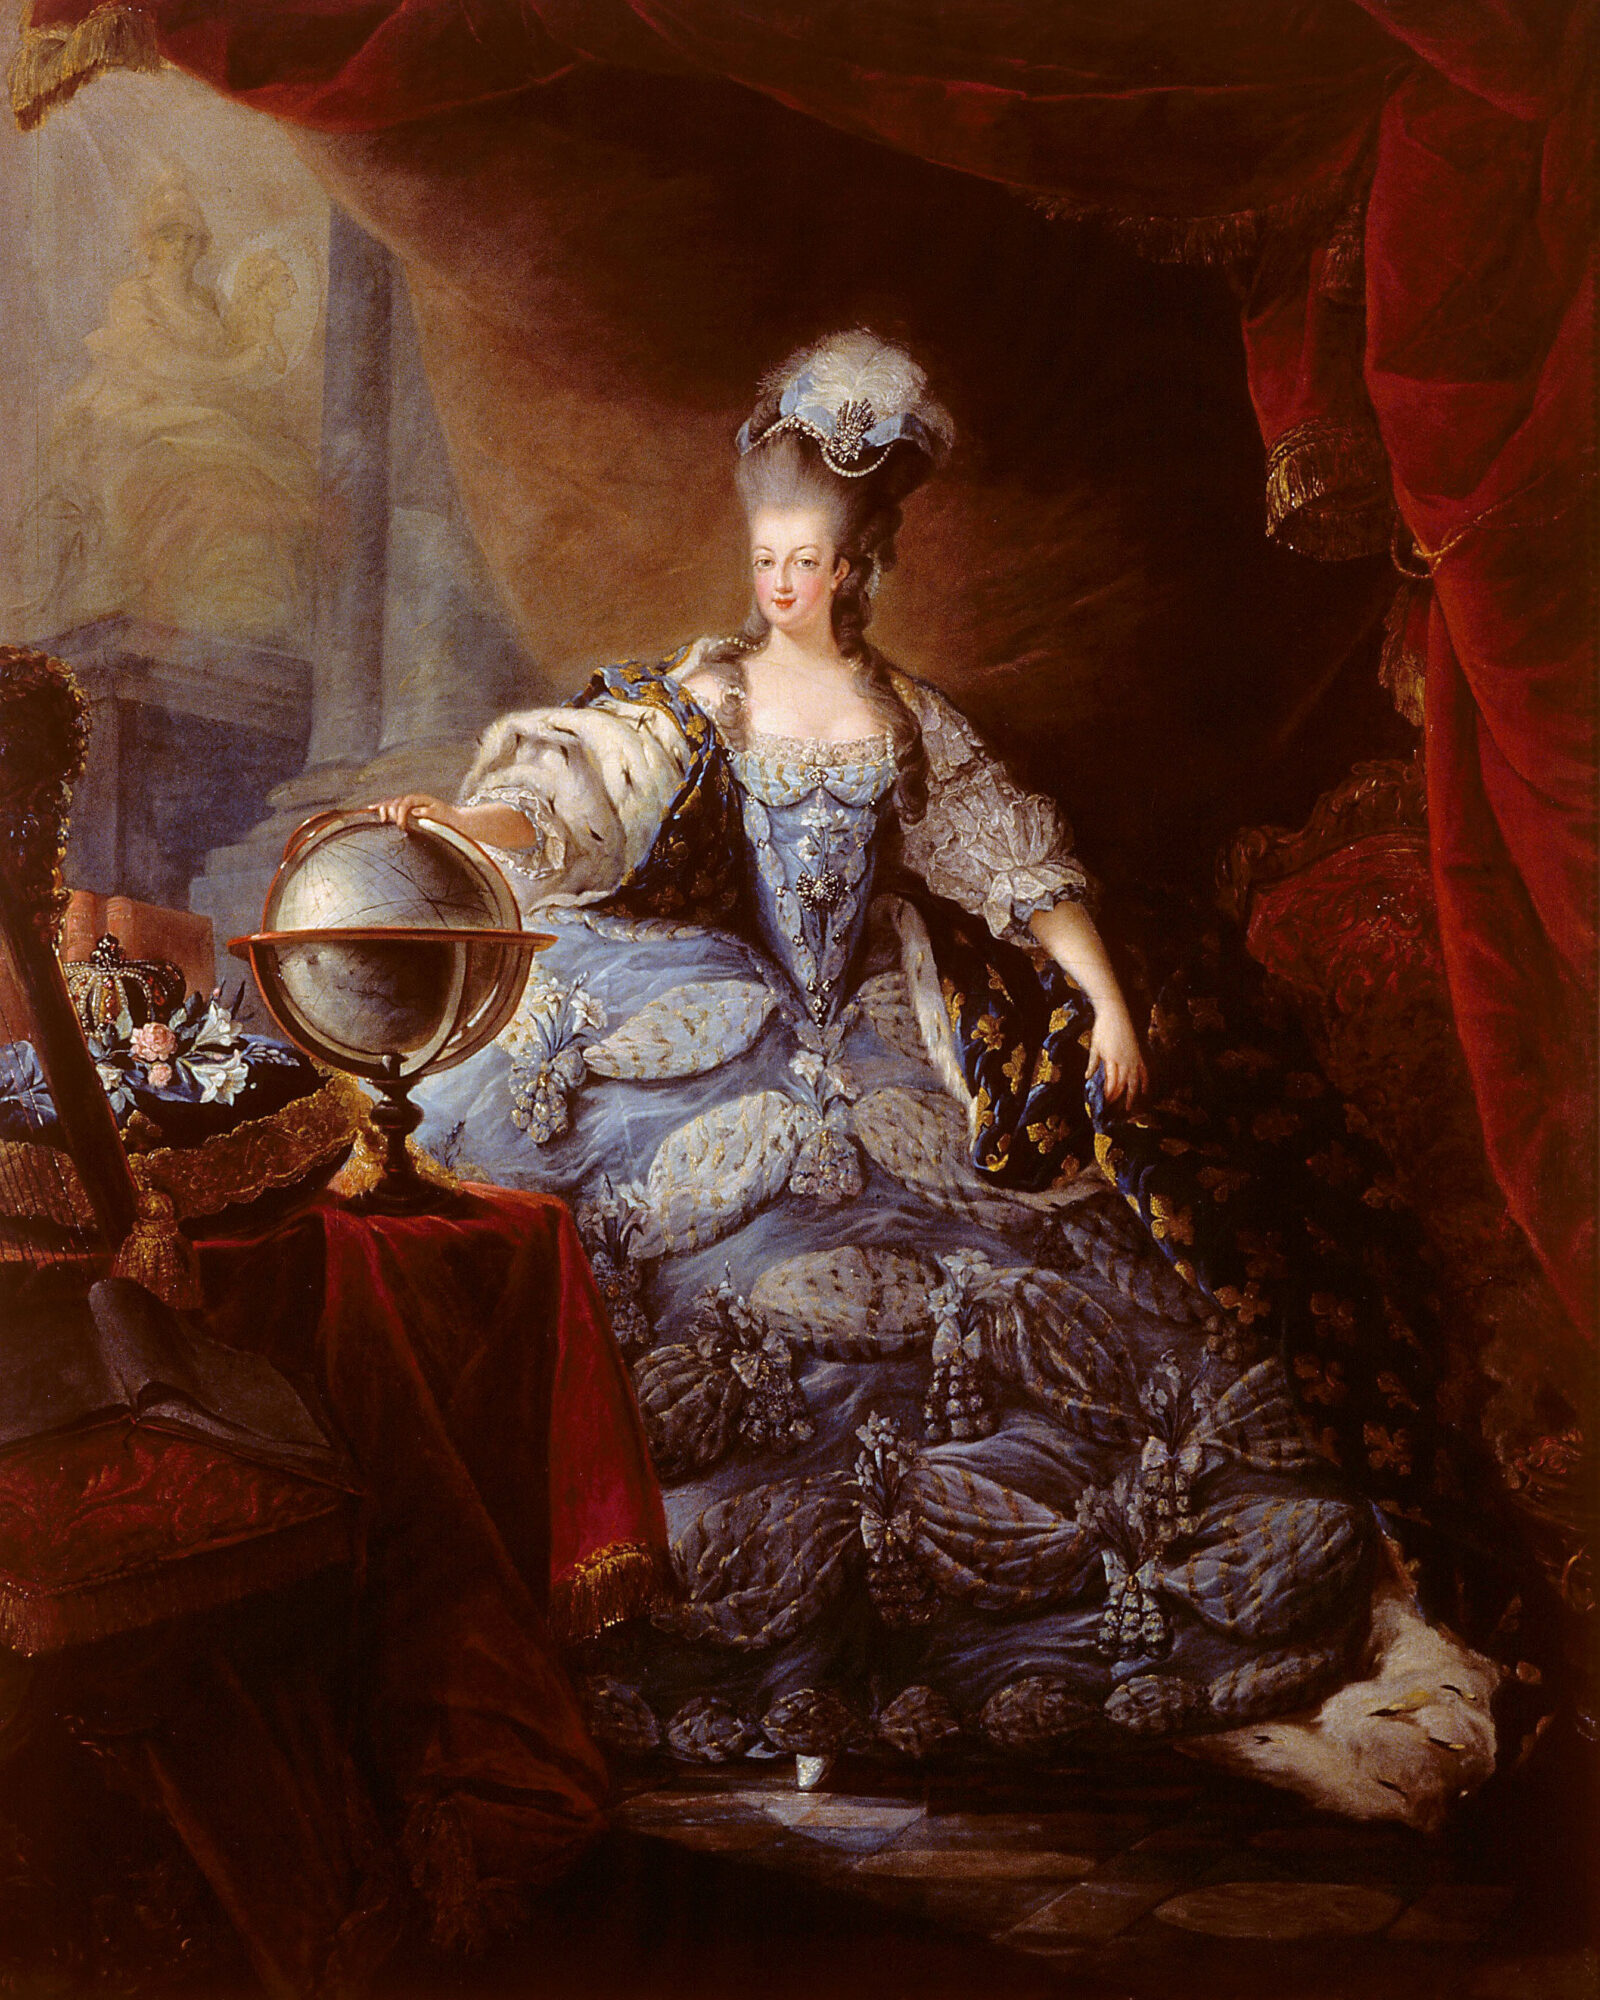 Marie Antoinette's jewelry portrait diamond bracelet auction